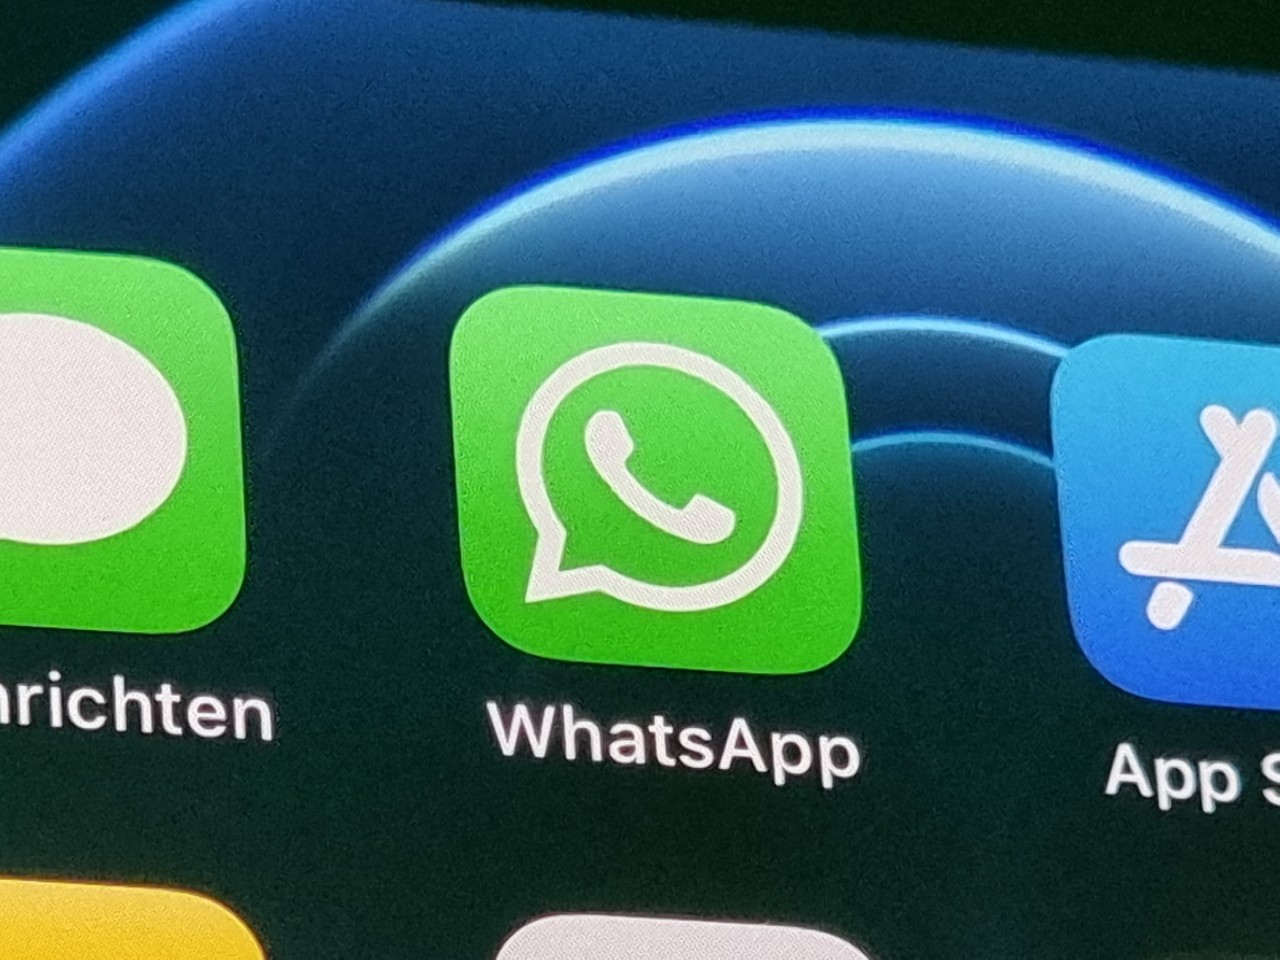 Whatsapp führt künftig ein Zeitlimit für eine bestimmte Funktion ein. (Symbolbild)